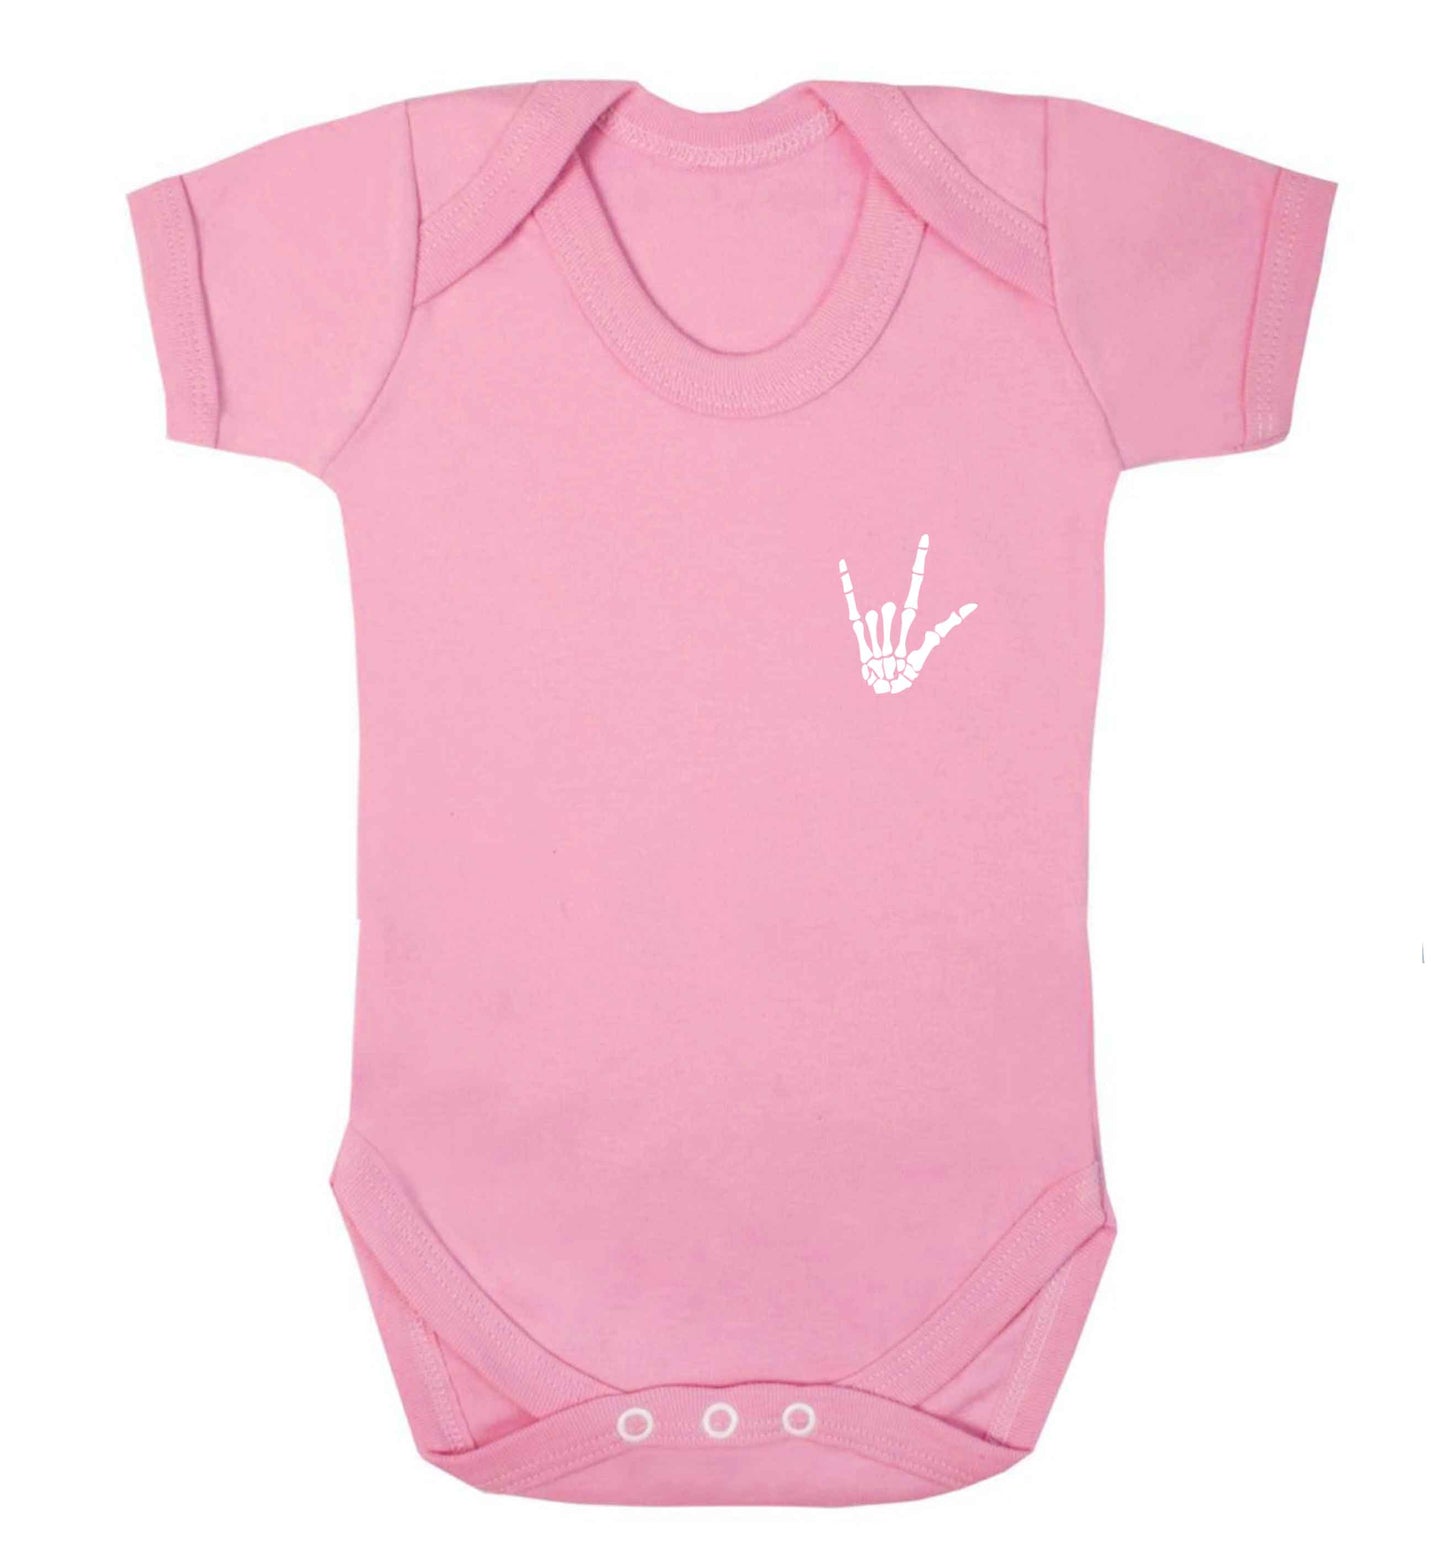 Skeleton Hand Pocket baby vest pale pink 18-24 months